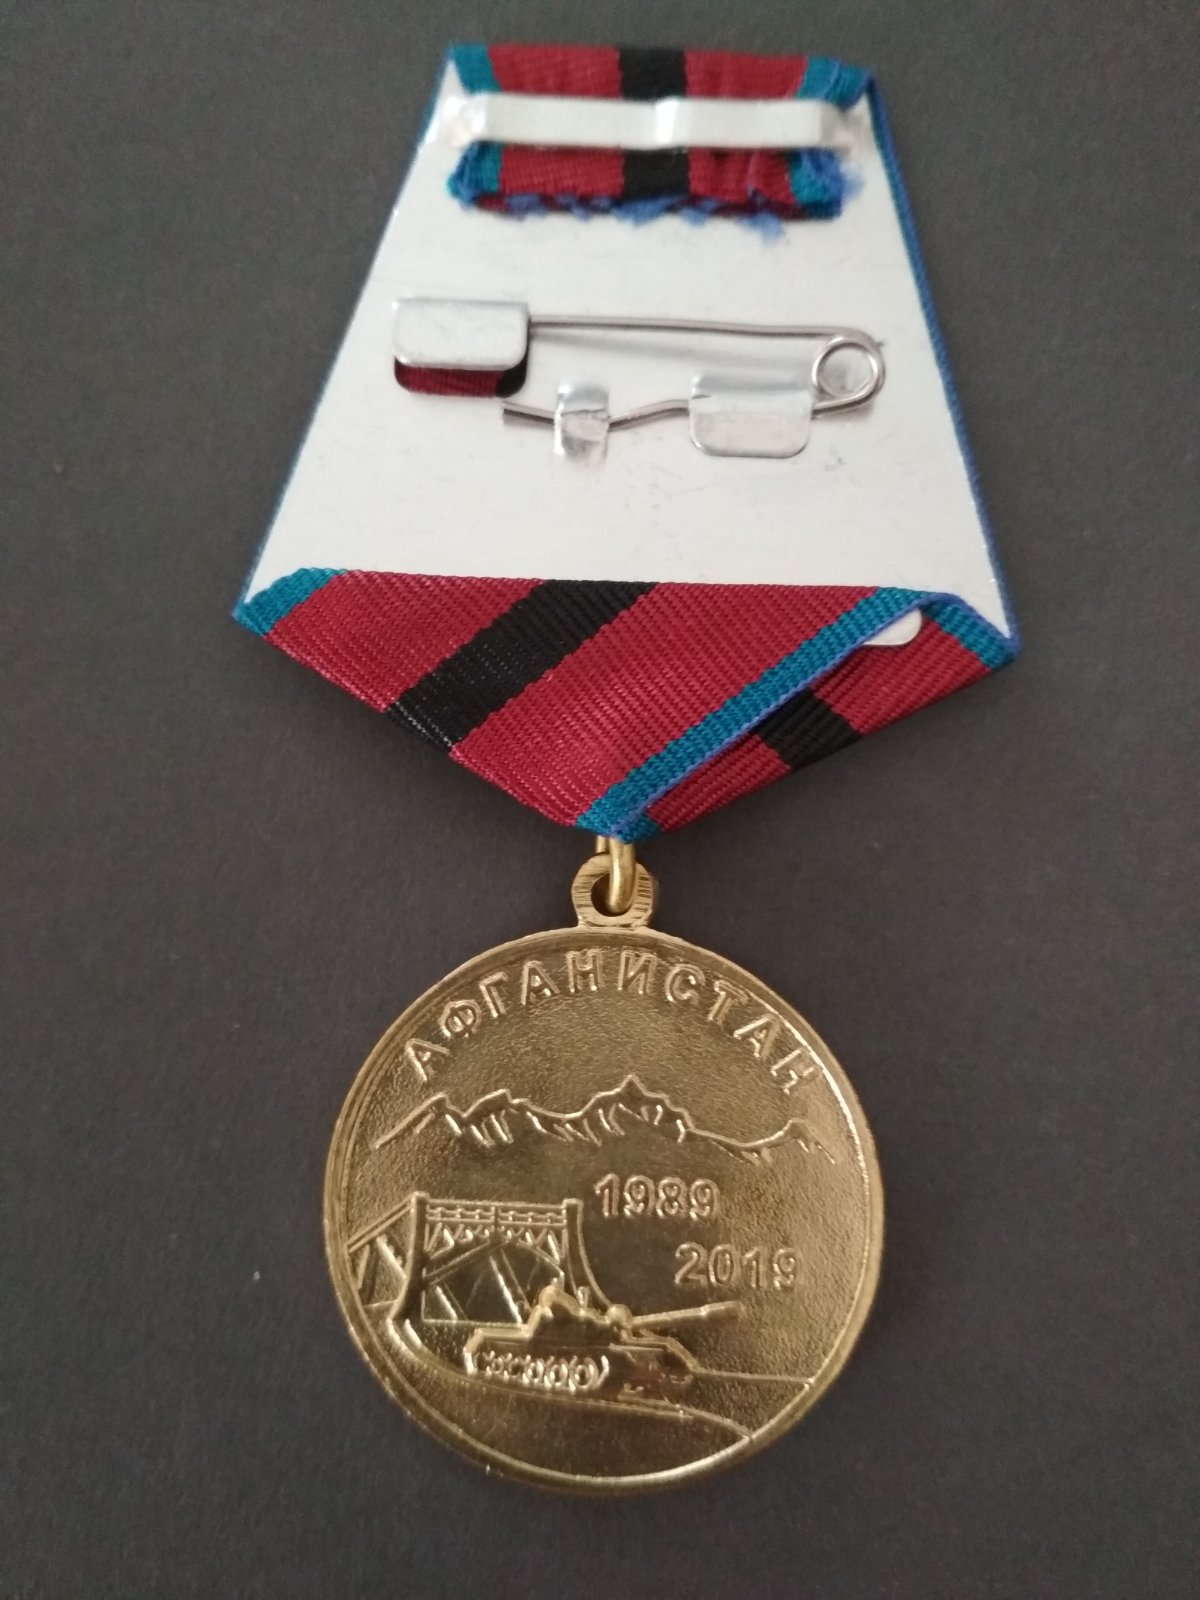 Медаль "30 лет вывода". Эмблема РСВА, флаги СССР и Афганистана.